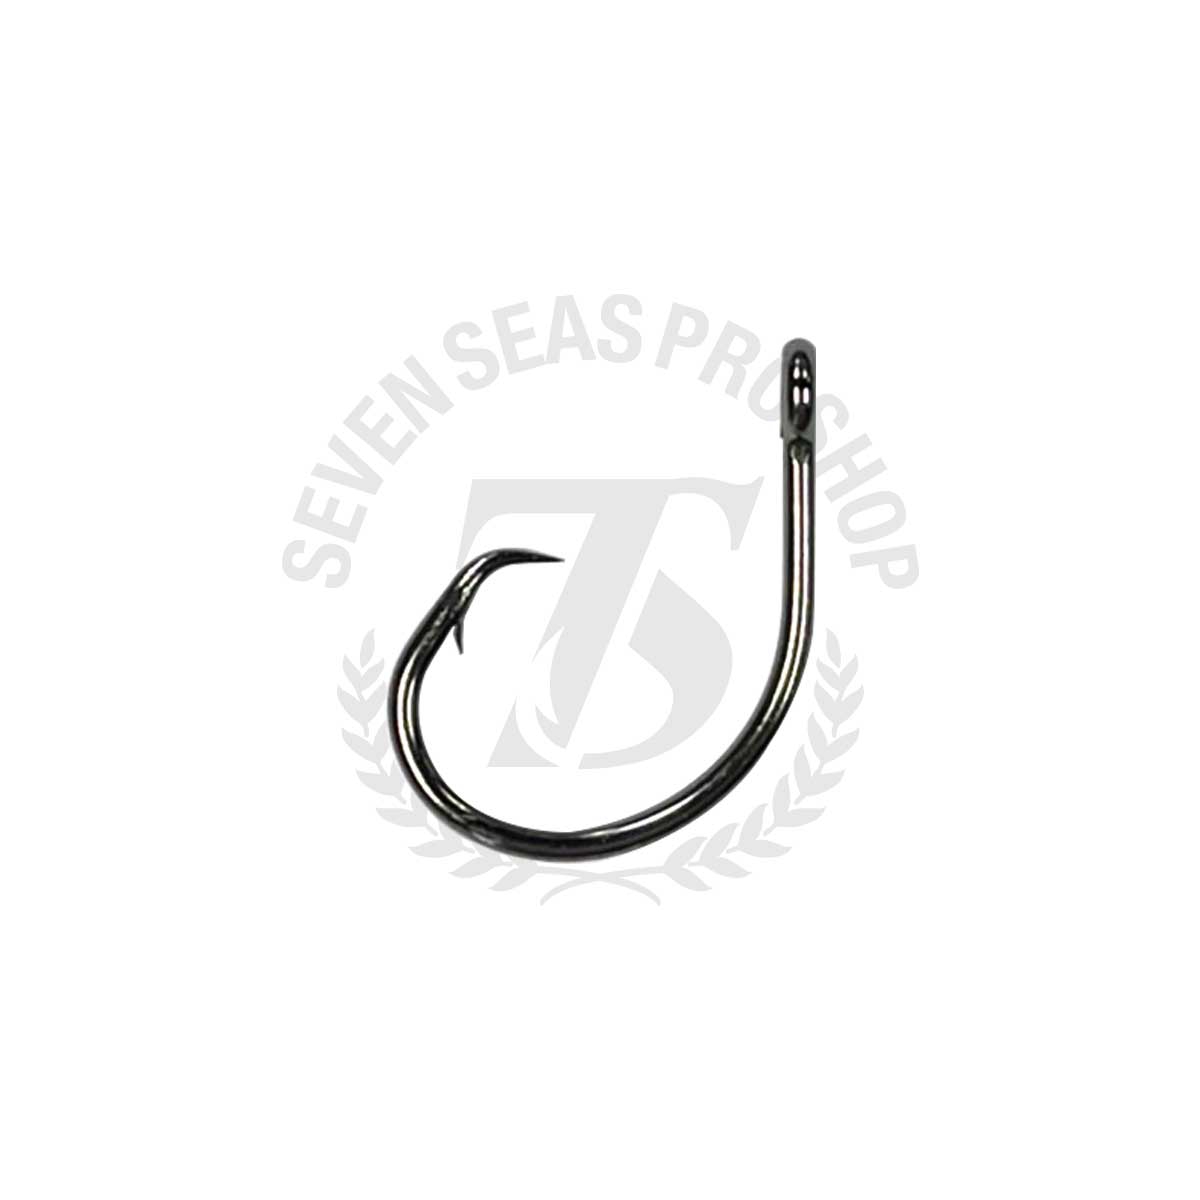 50pcs Size 10/0 Fishing 4x Strong circle hook offset black nickel Bulk Pack  @US